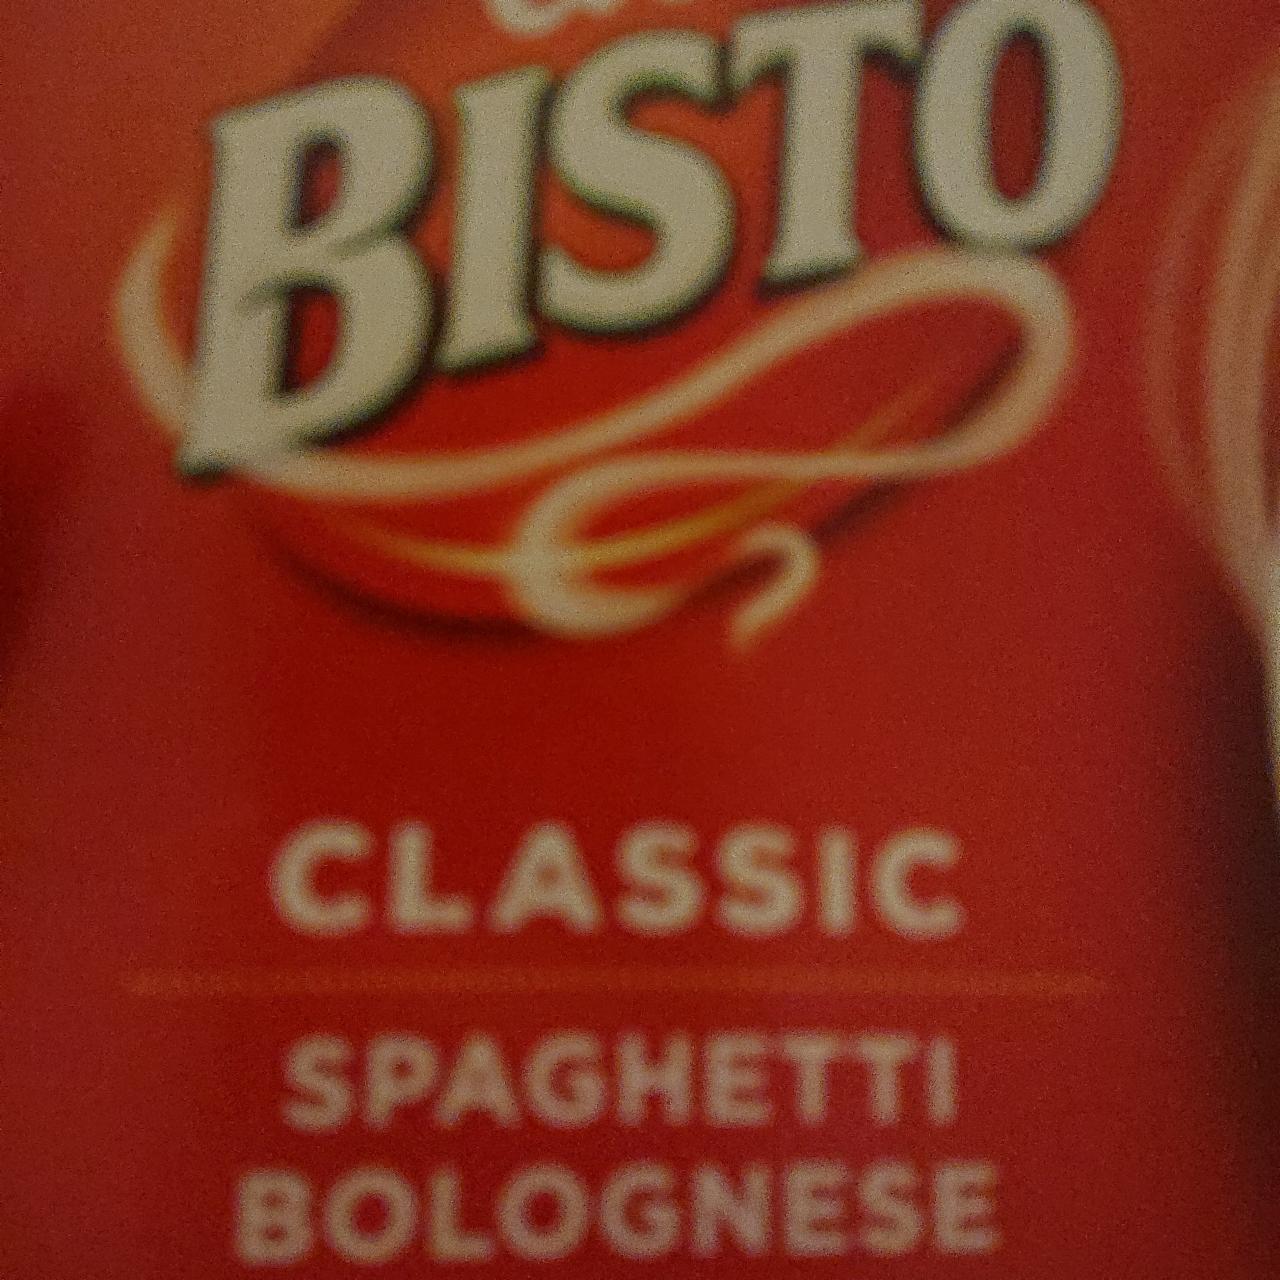 Fotografie - Classic Spaghetti bolognese Bisto